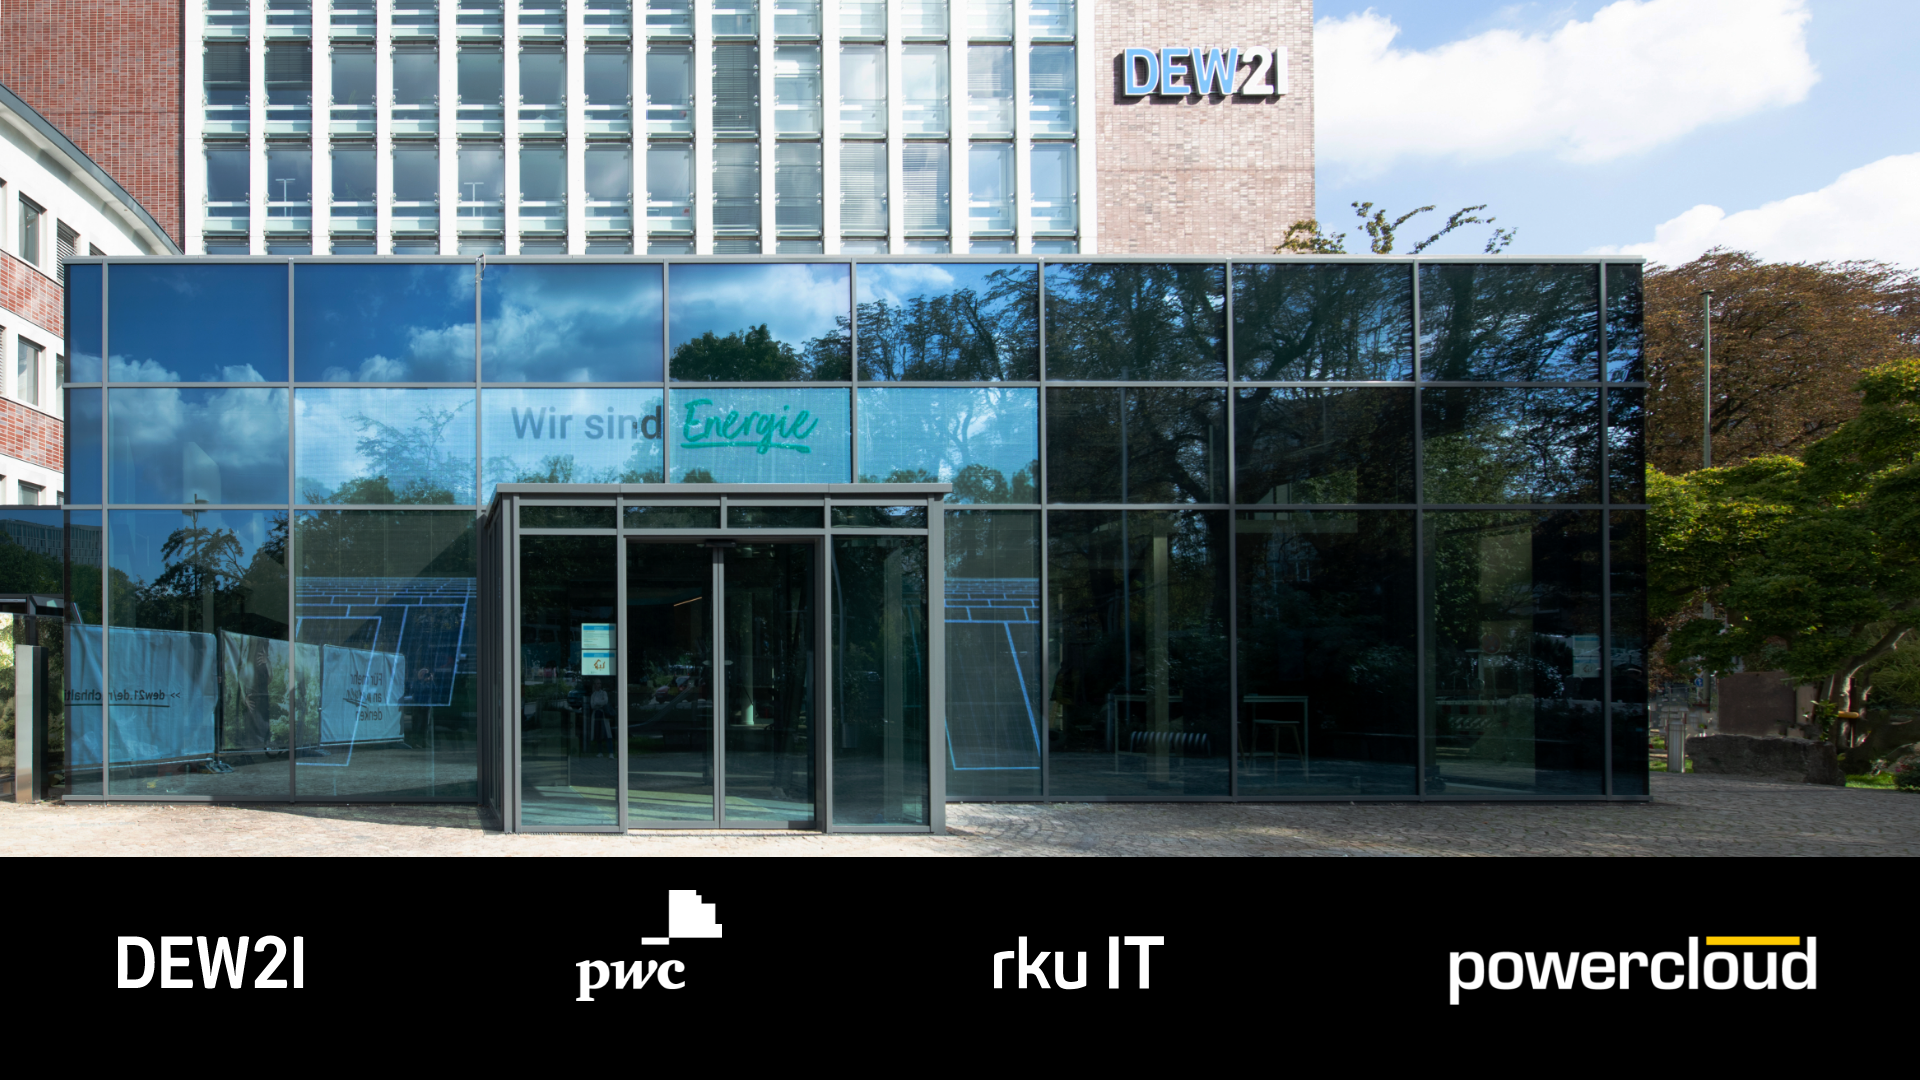 DEW21 setzt bei Digitalisierung auf PwC-Abrechnungsinstanz auf powercloud-Basis sowie Service und Support der rku.it